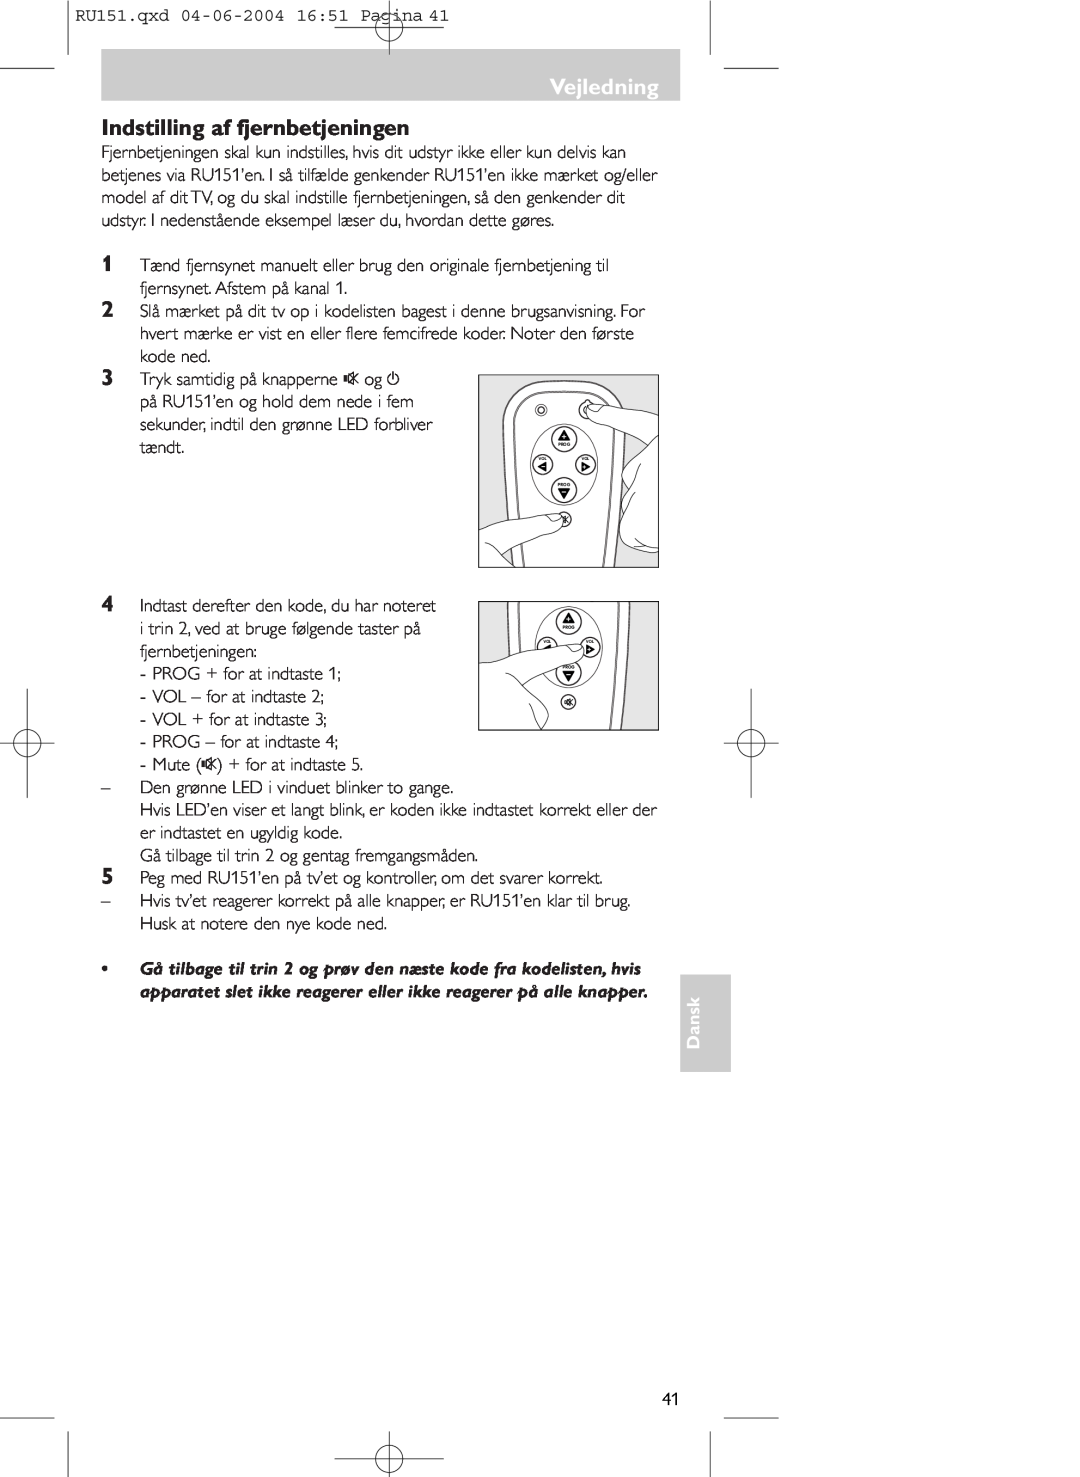 Philips SBC RU 151 manual Vejledning, Indstilling af fjernbetjeningen, Dansk 